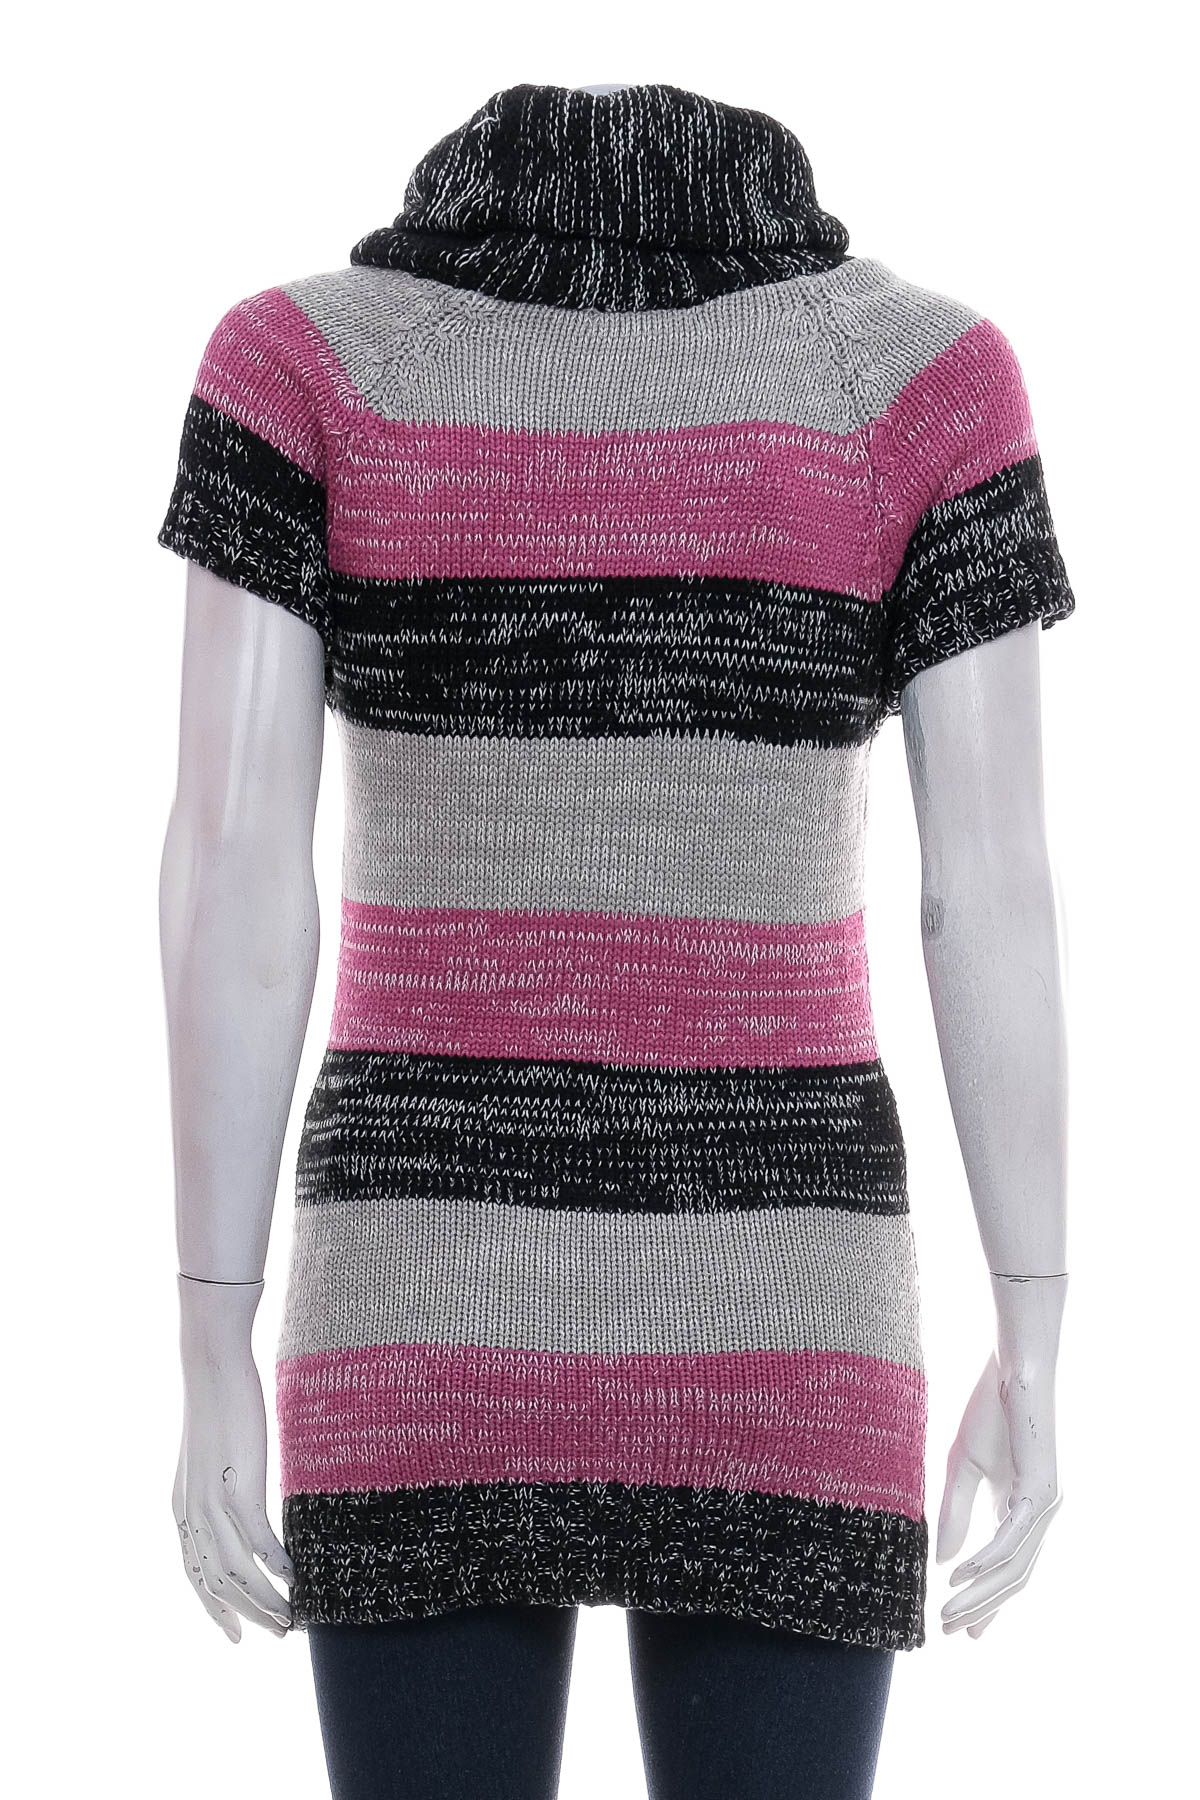 Women's sweater - Fami Fashion - 1